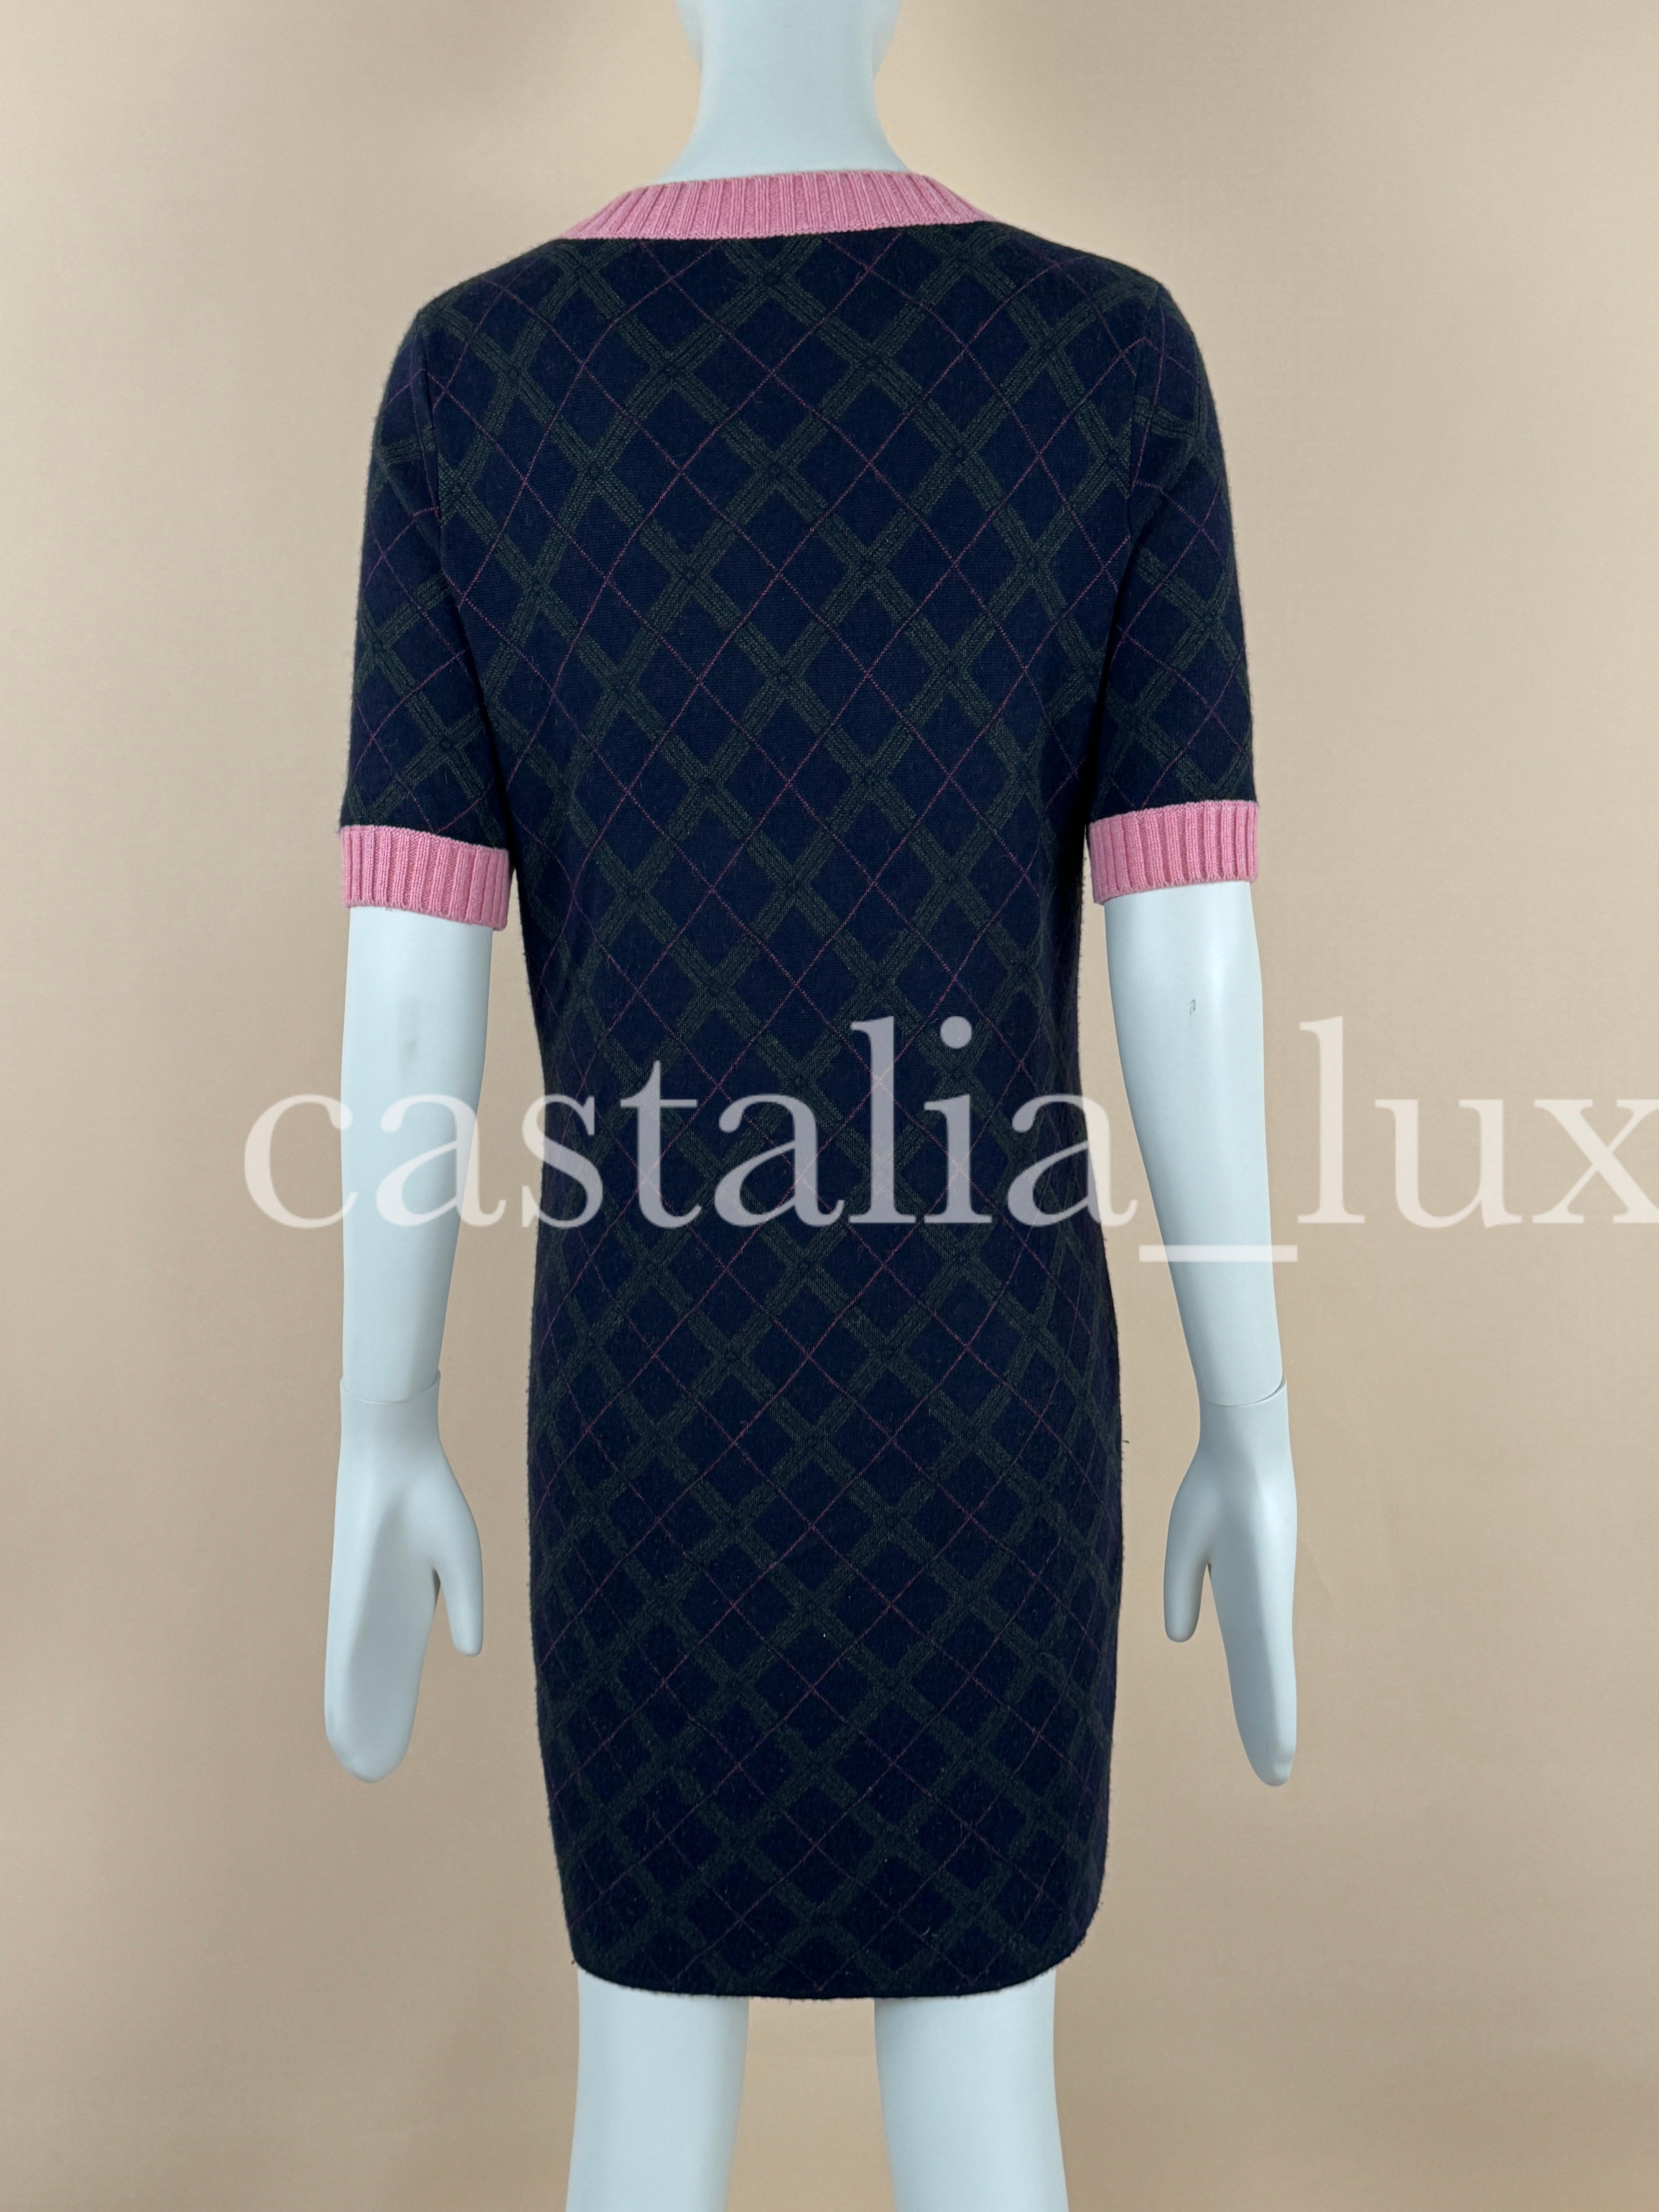 Chanel New  Paris / Edinburgh Argyle Cashmere Dress For Sale 2